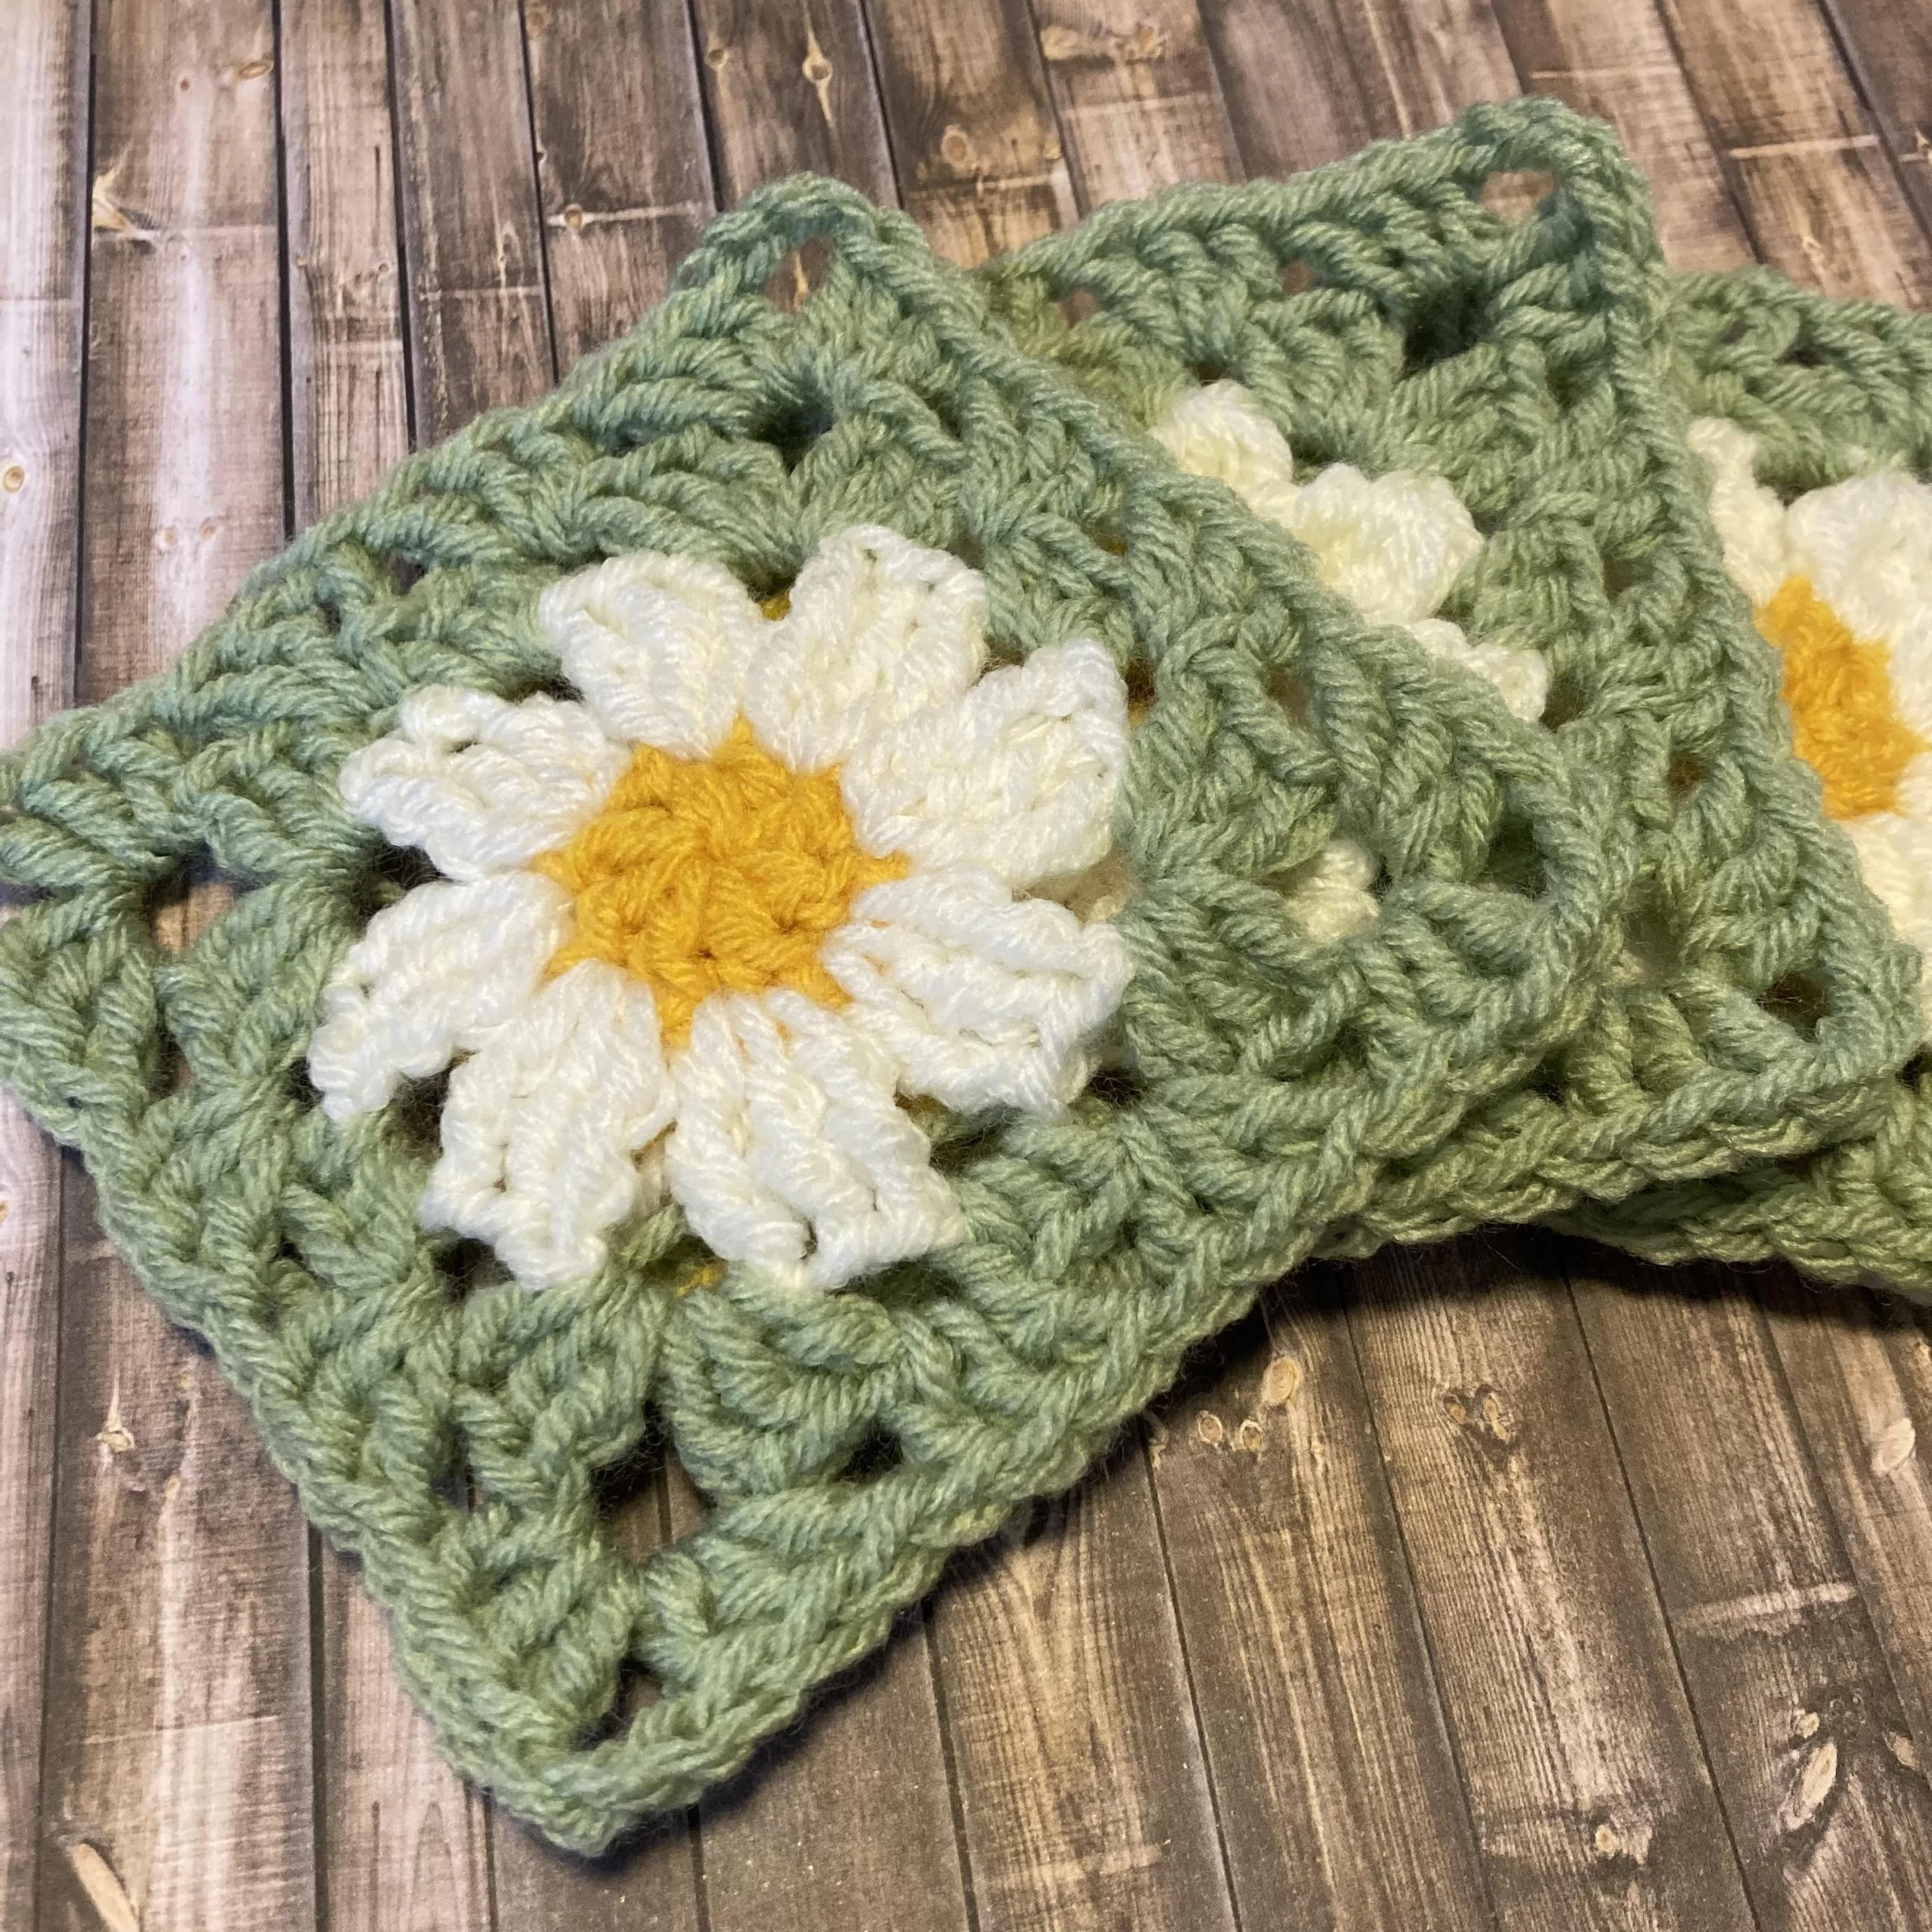 Crochet Class: Cute Daisy Granny Square (ages 12+)